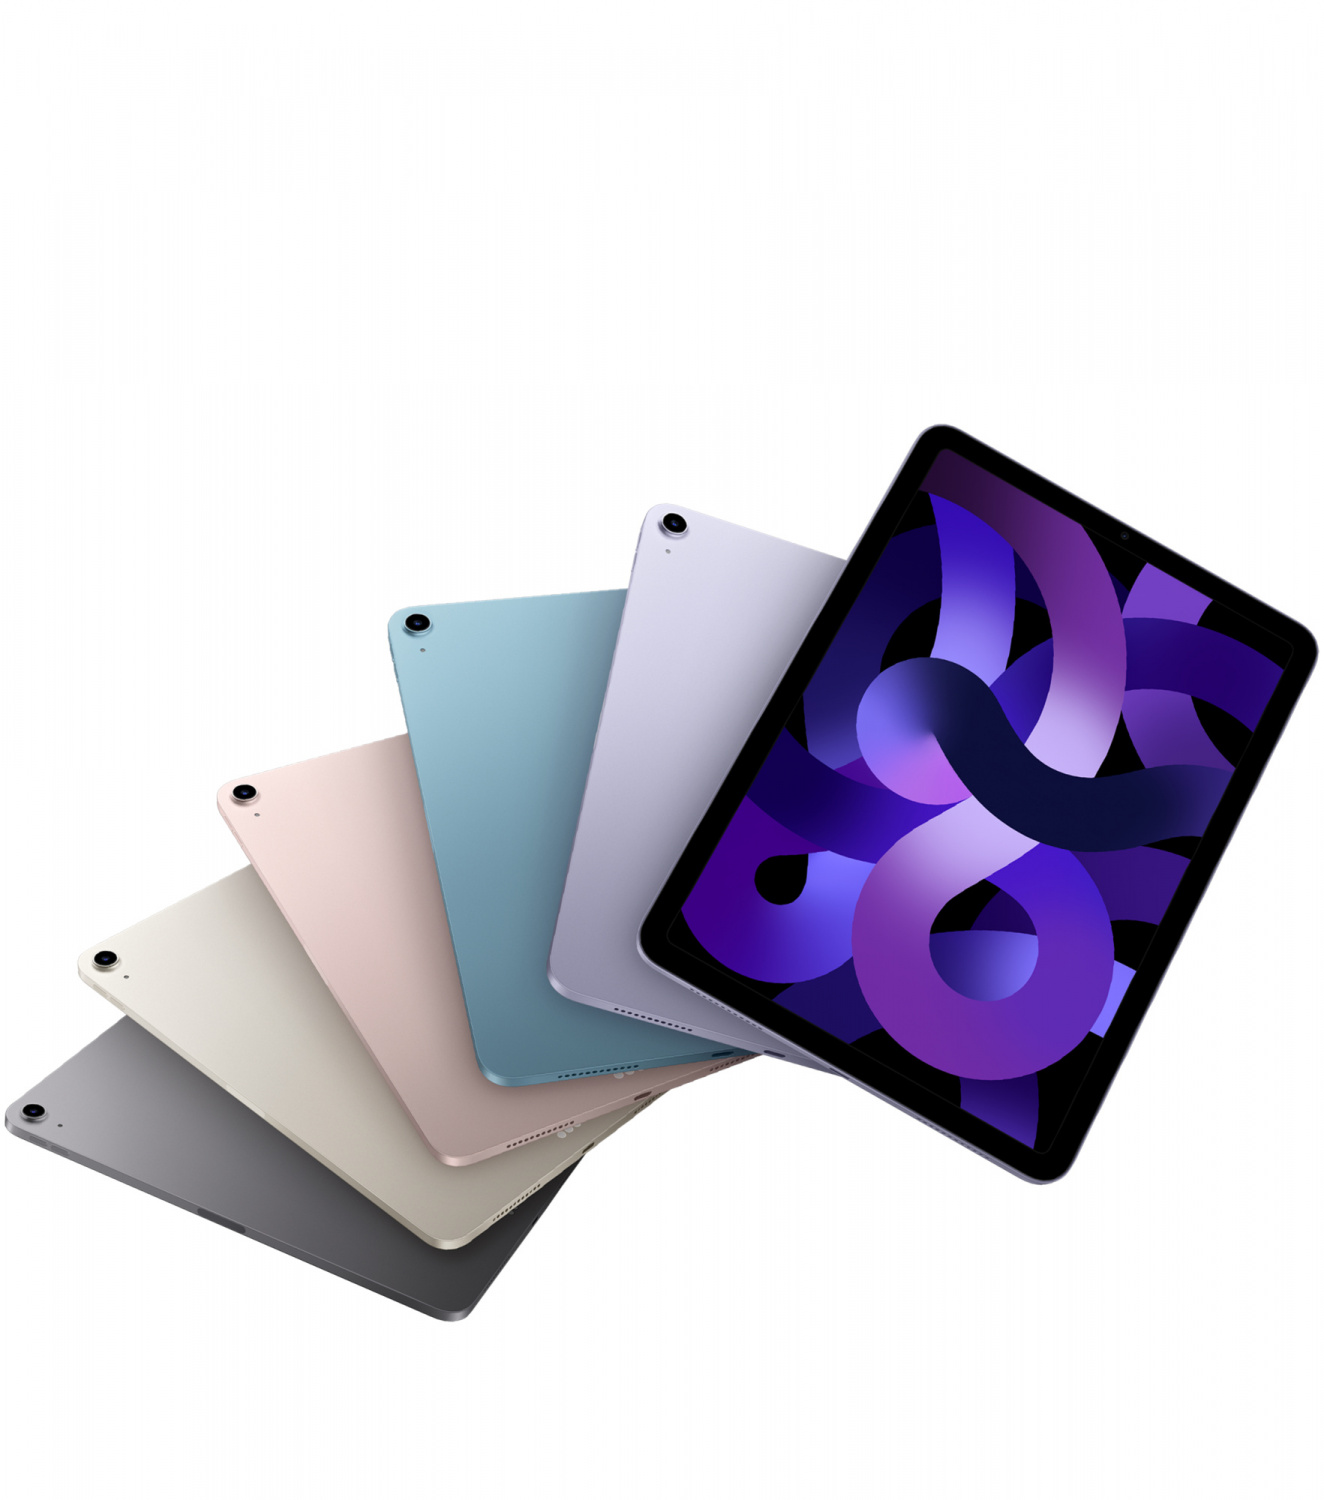 Купить планшет apple ipad air 5 поколение m1 2022 wi-fi + cellular 256 гб, space grey  Apple iPad Air в официальном магазине Apple, Samsung, Xiaomi. iPixel.ru Купить, заказ, кредит, рассрочка, отзывы,  характеристики, цена,  фотографии, в подарок.